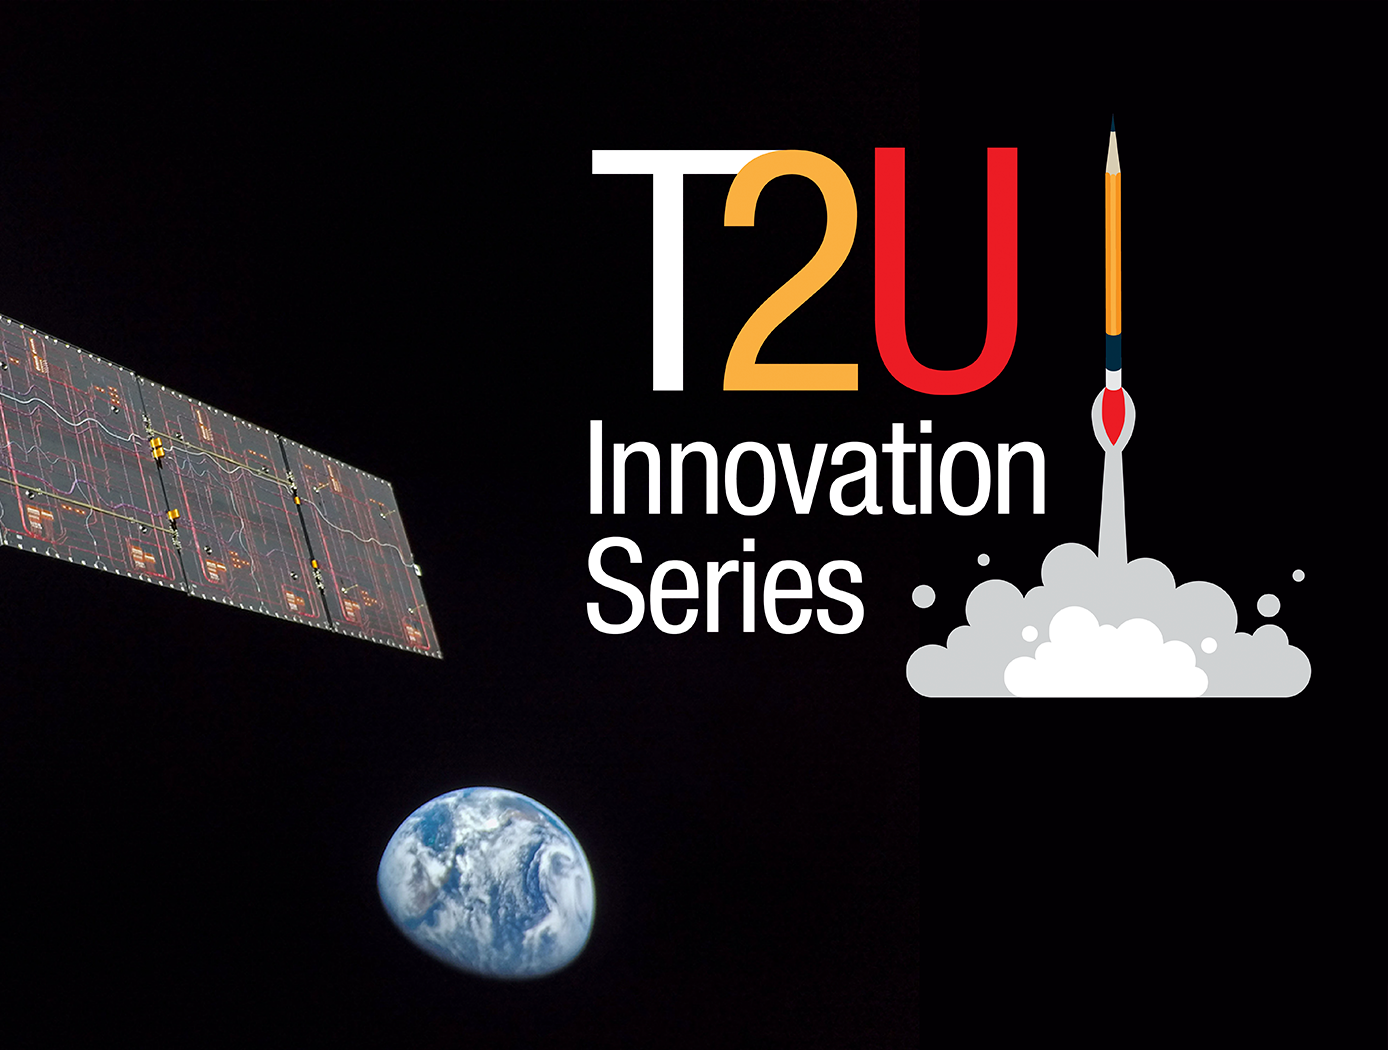 T2U Innovation Series Slider